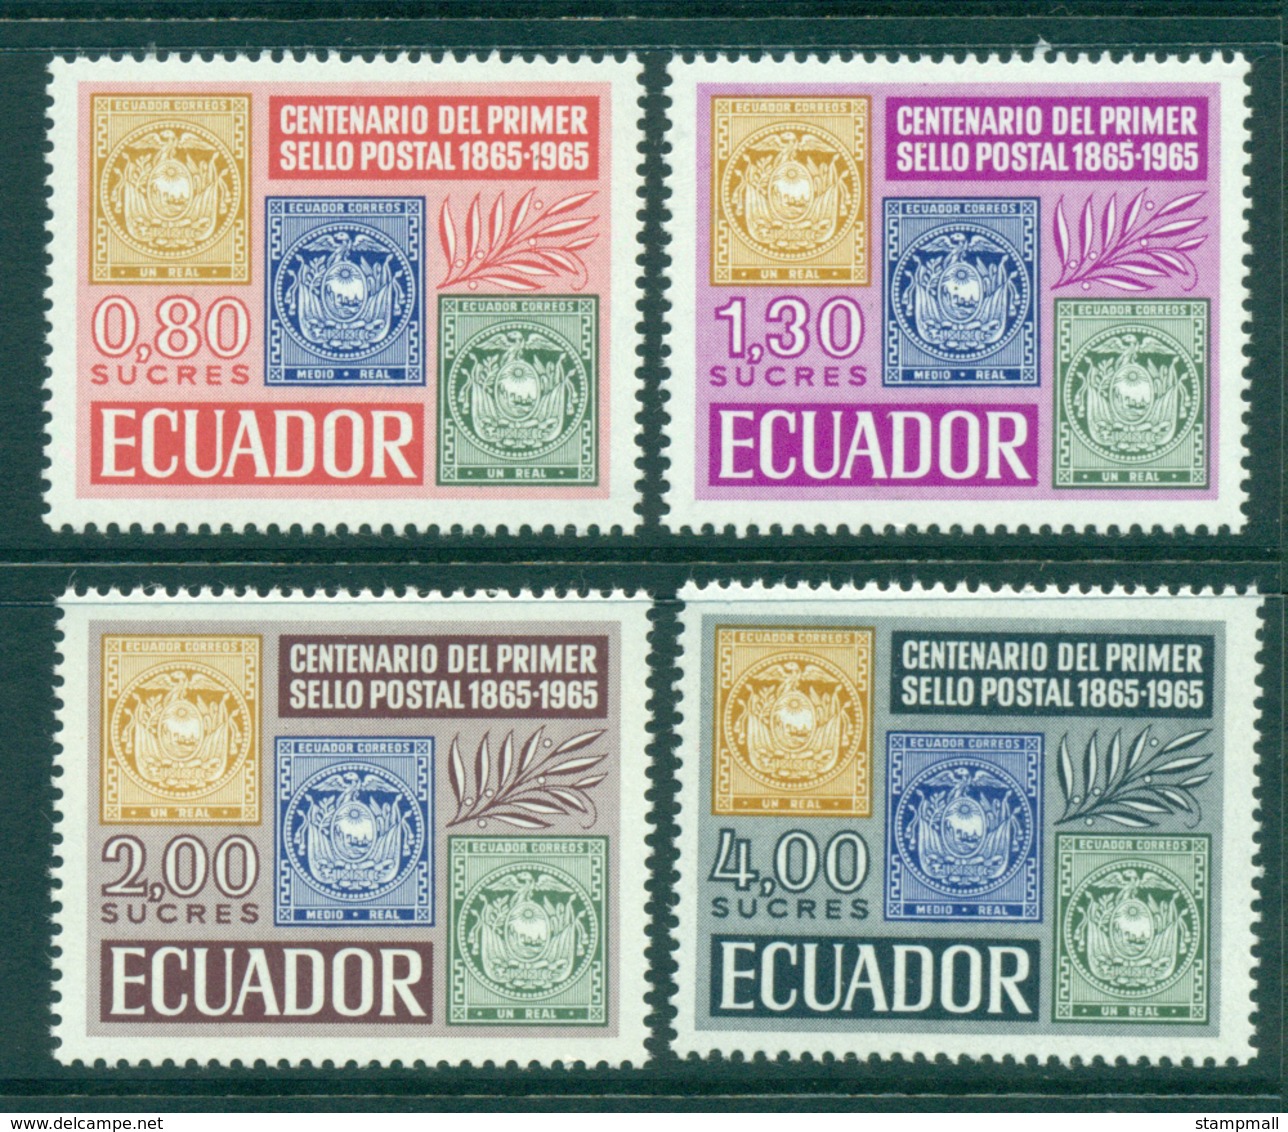 Ecuador 1965 Stamp Centenary MUH Lot3553 - Ecuador